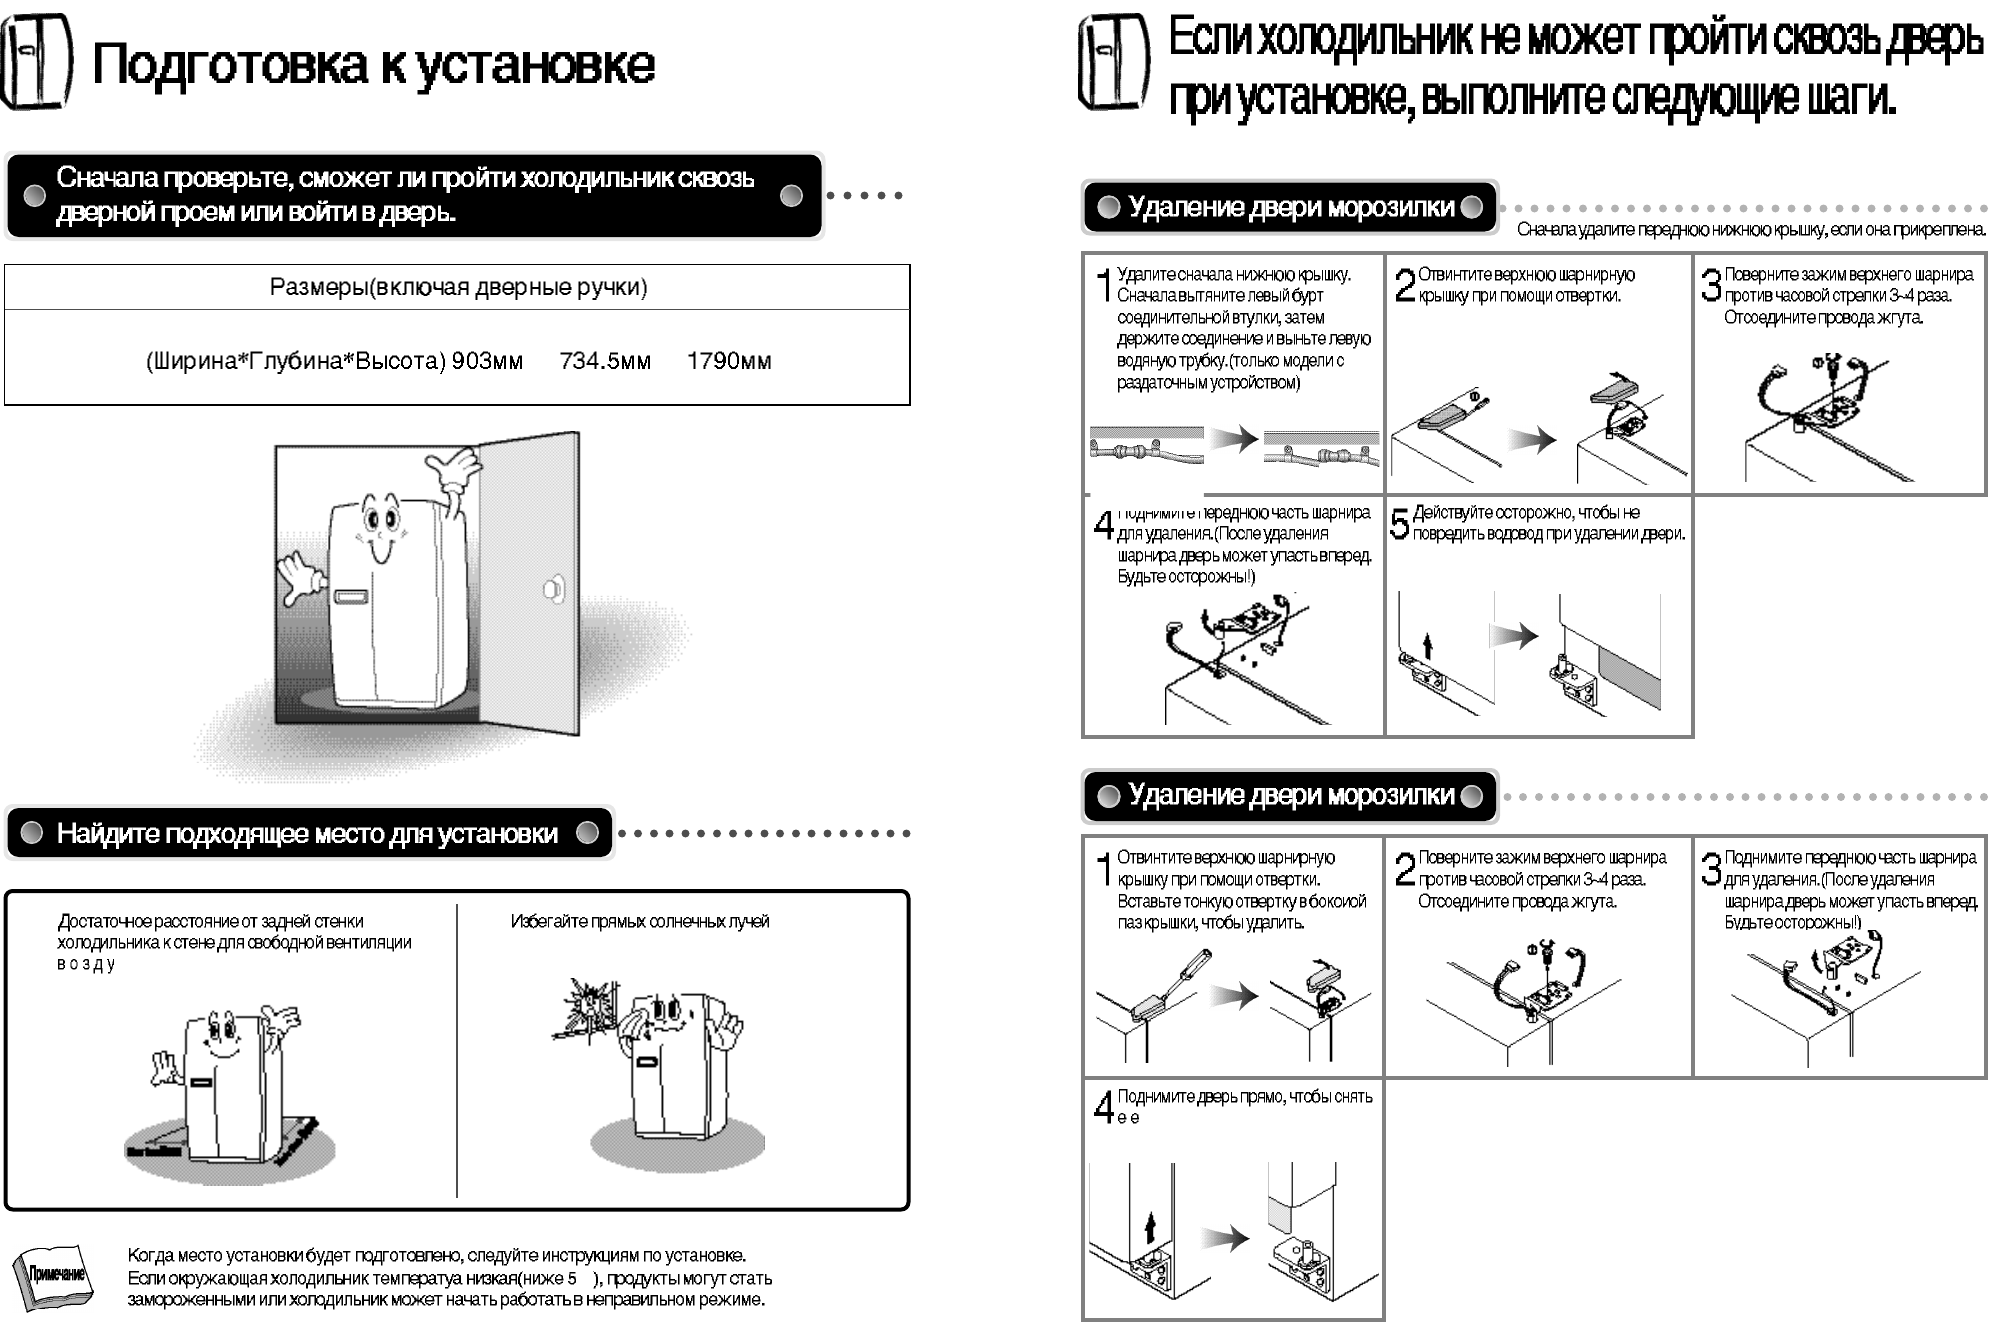 Холодильник Daewoo Electronics FR-092 AIX: инструкция